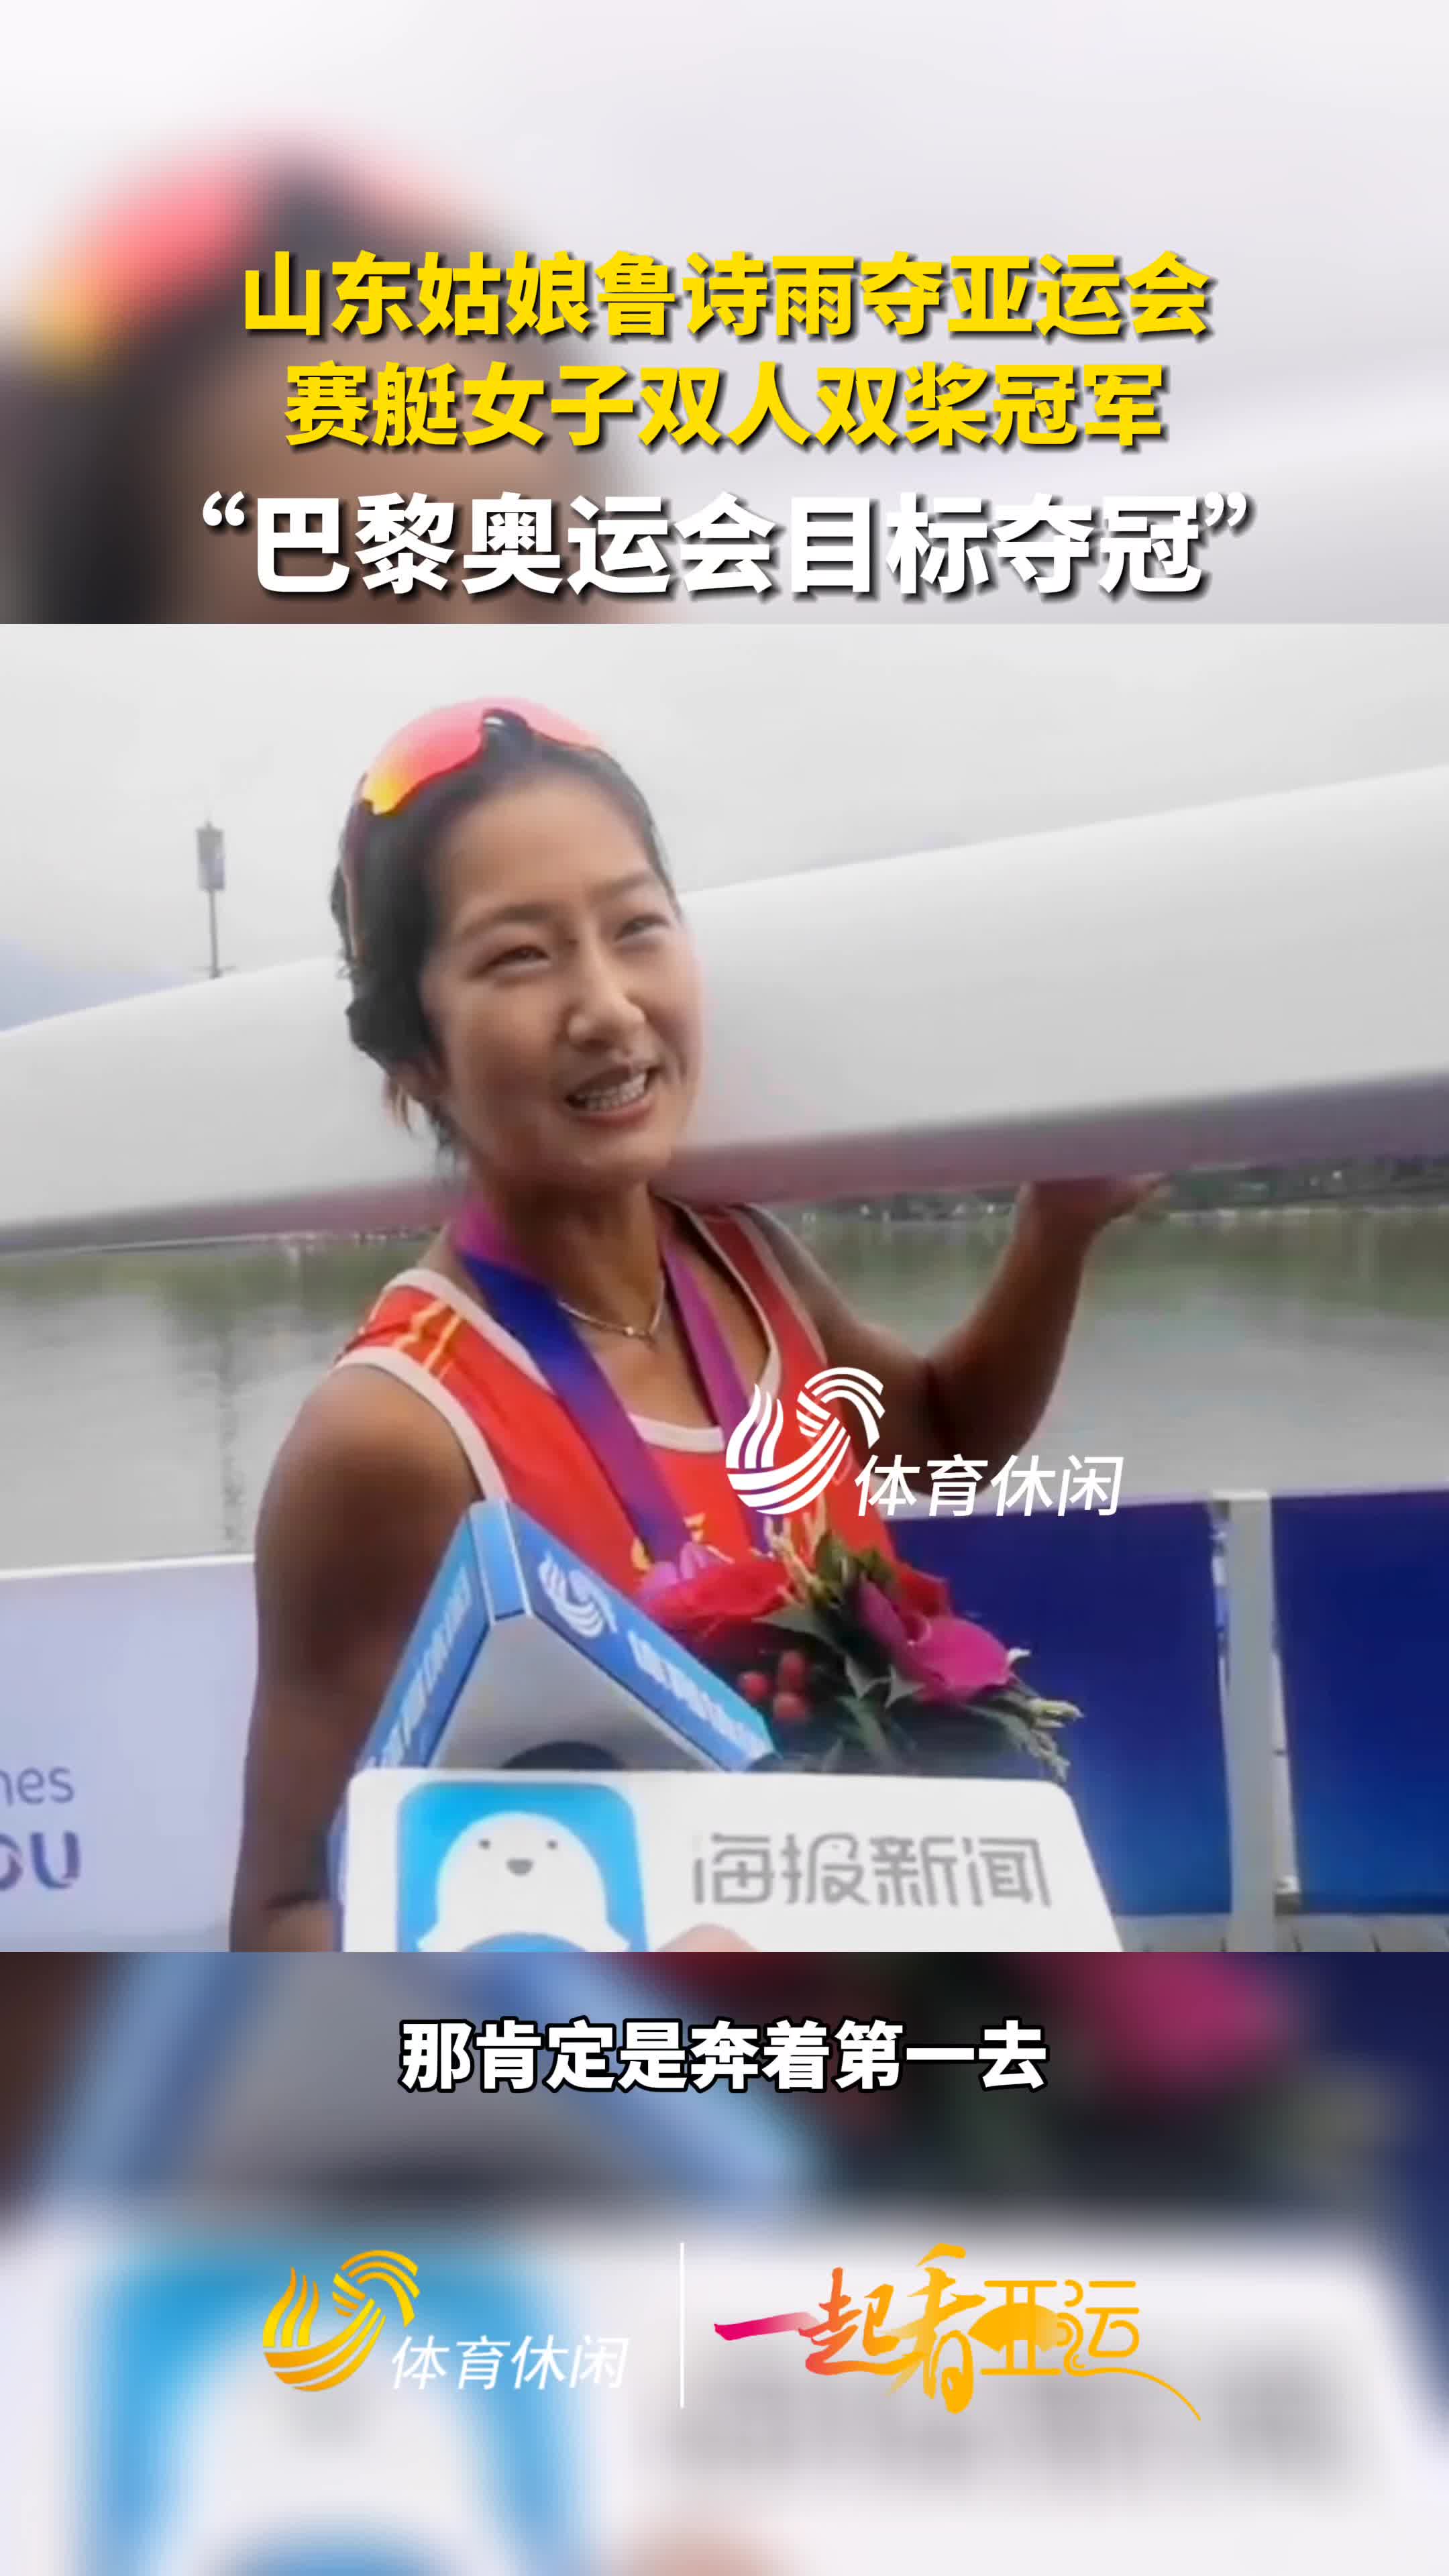 一起看亚运丨山东姑娘鲁诗雨接受采访说巴黎奥运目标是第一